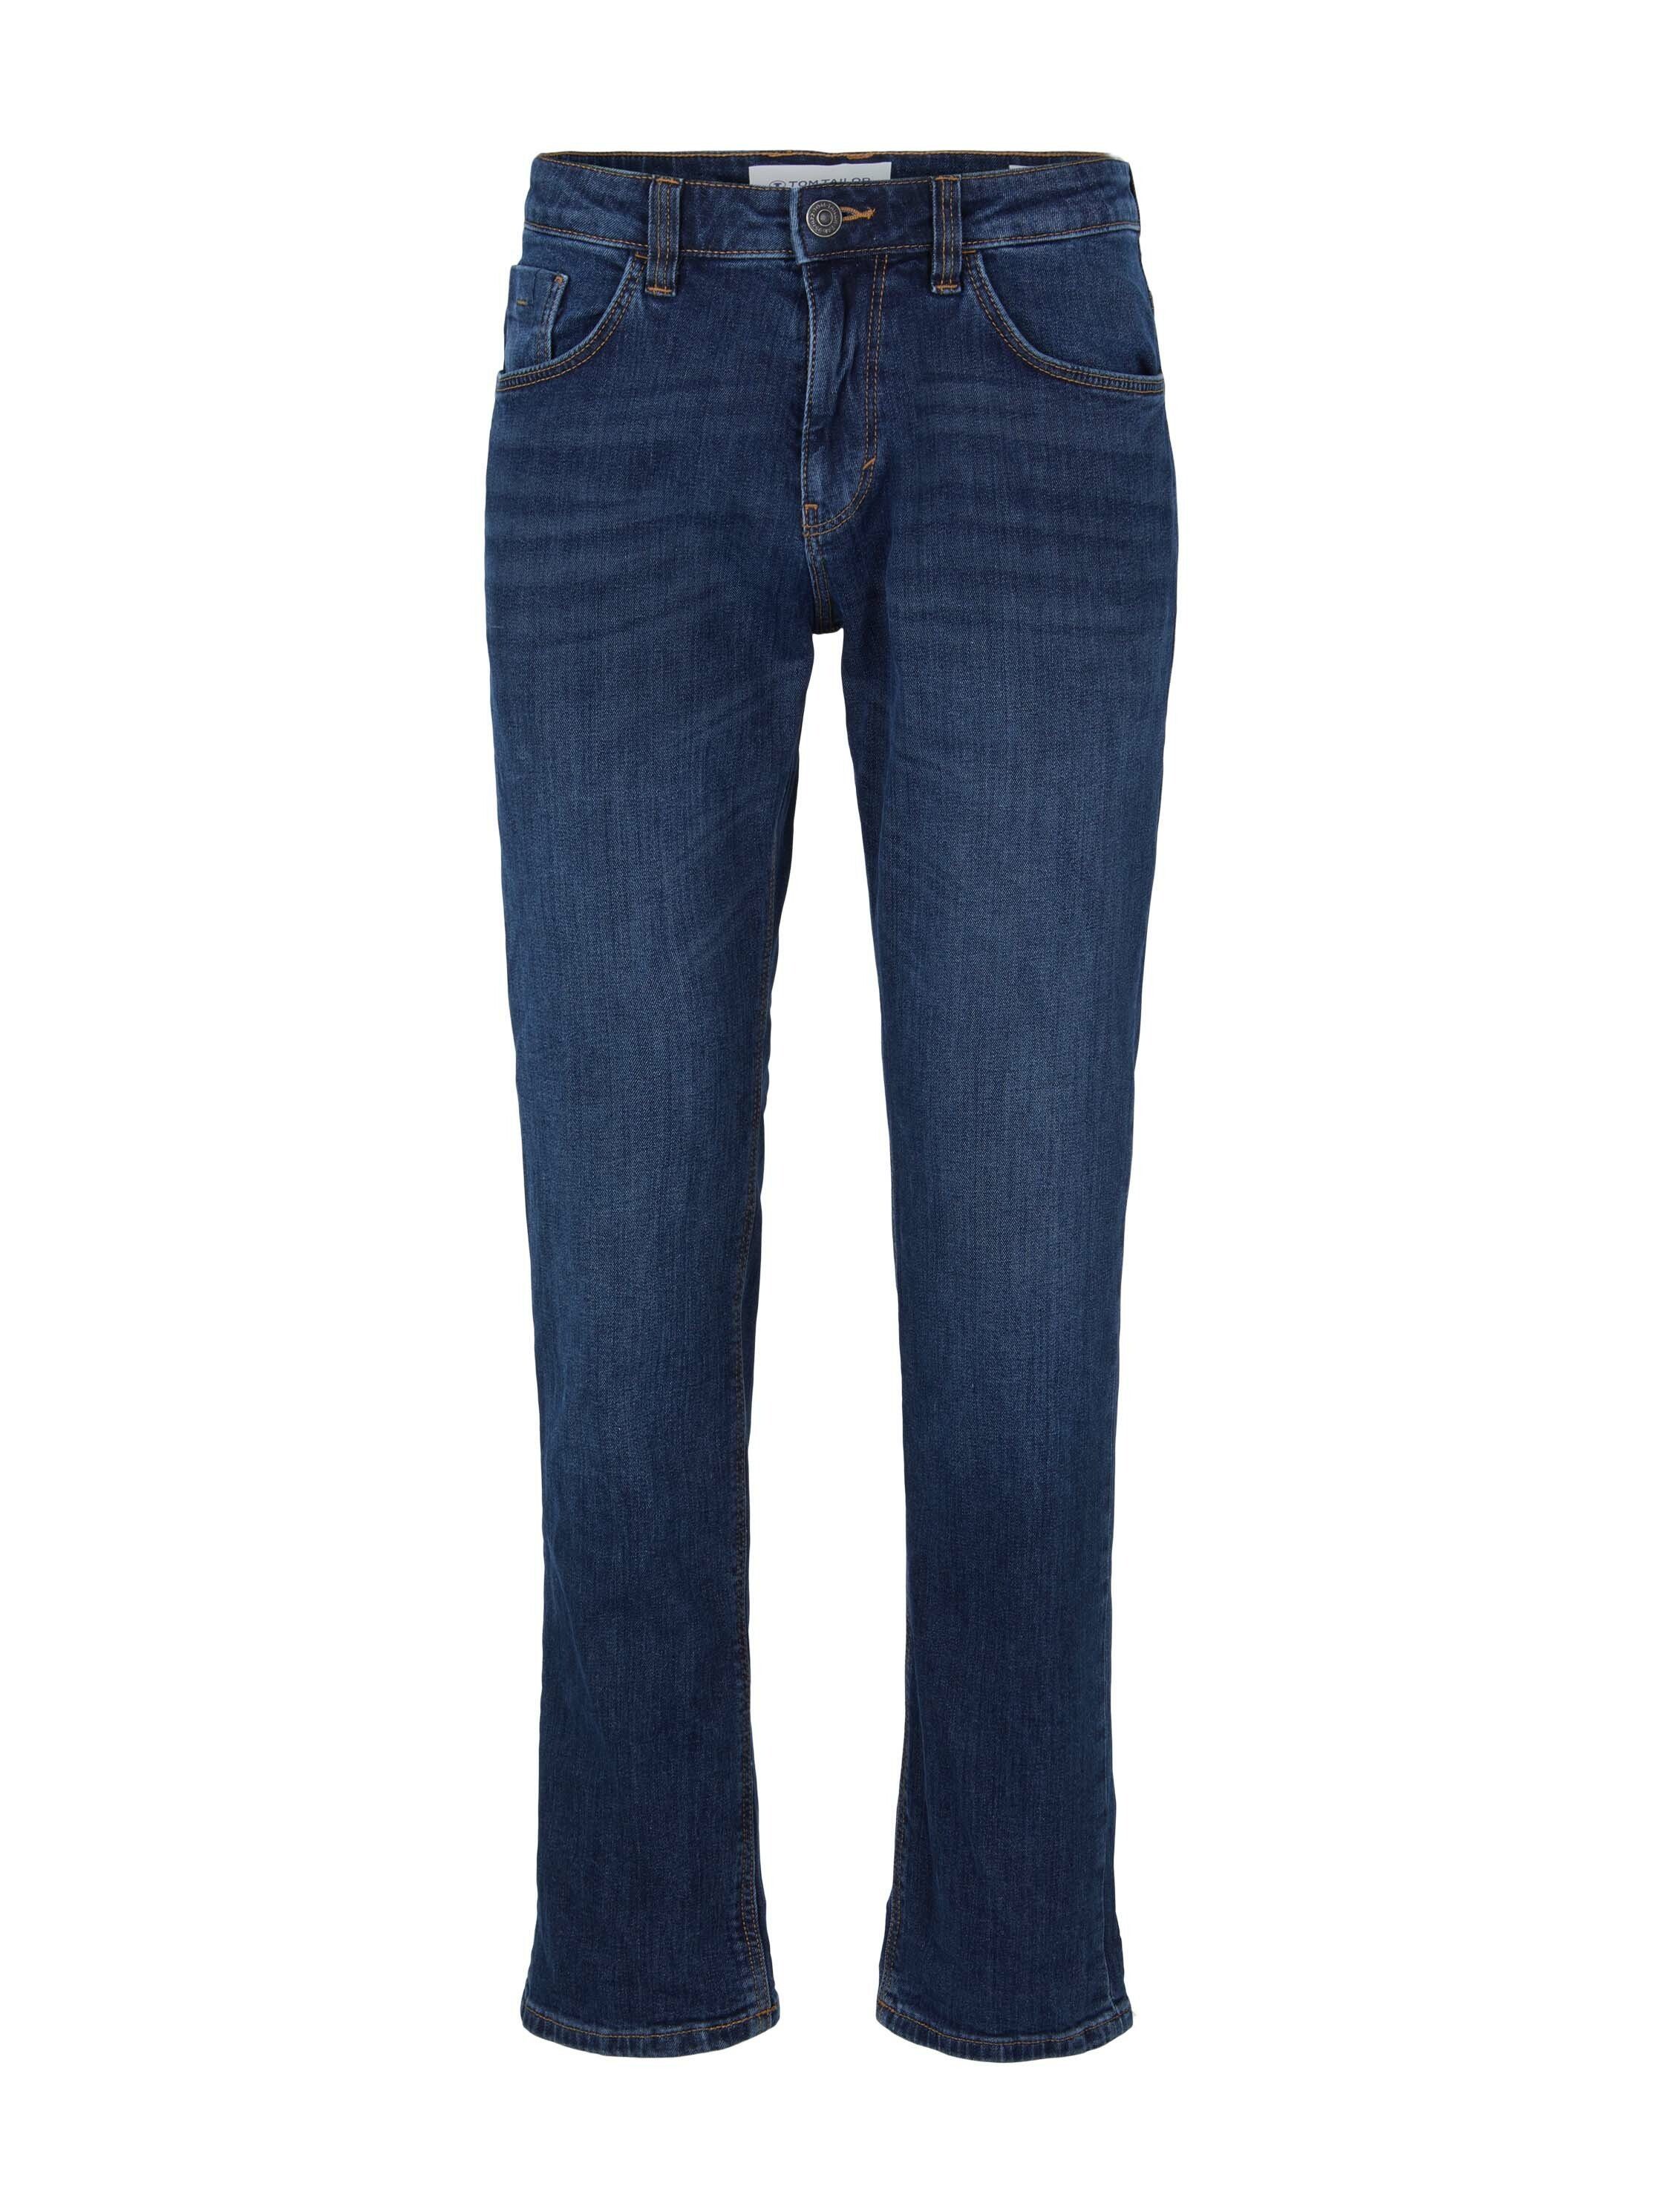 Jeans Slim JOSH Hose 5-Pocket-Jeans Regular TOM TAILOR